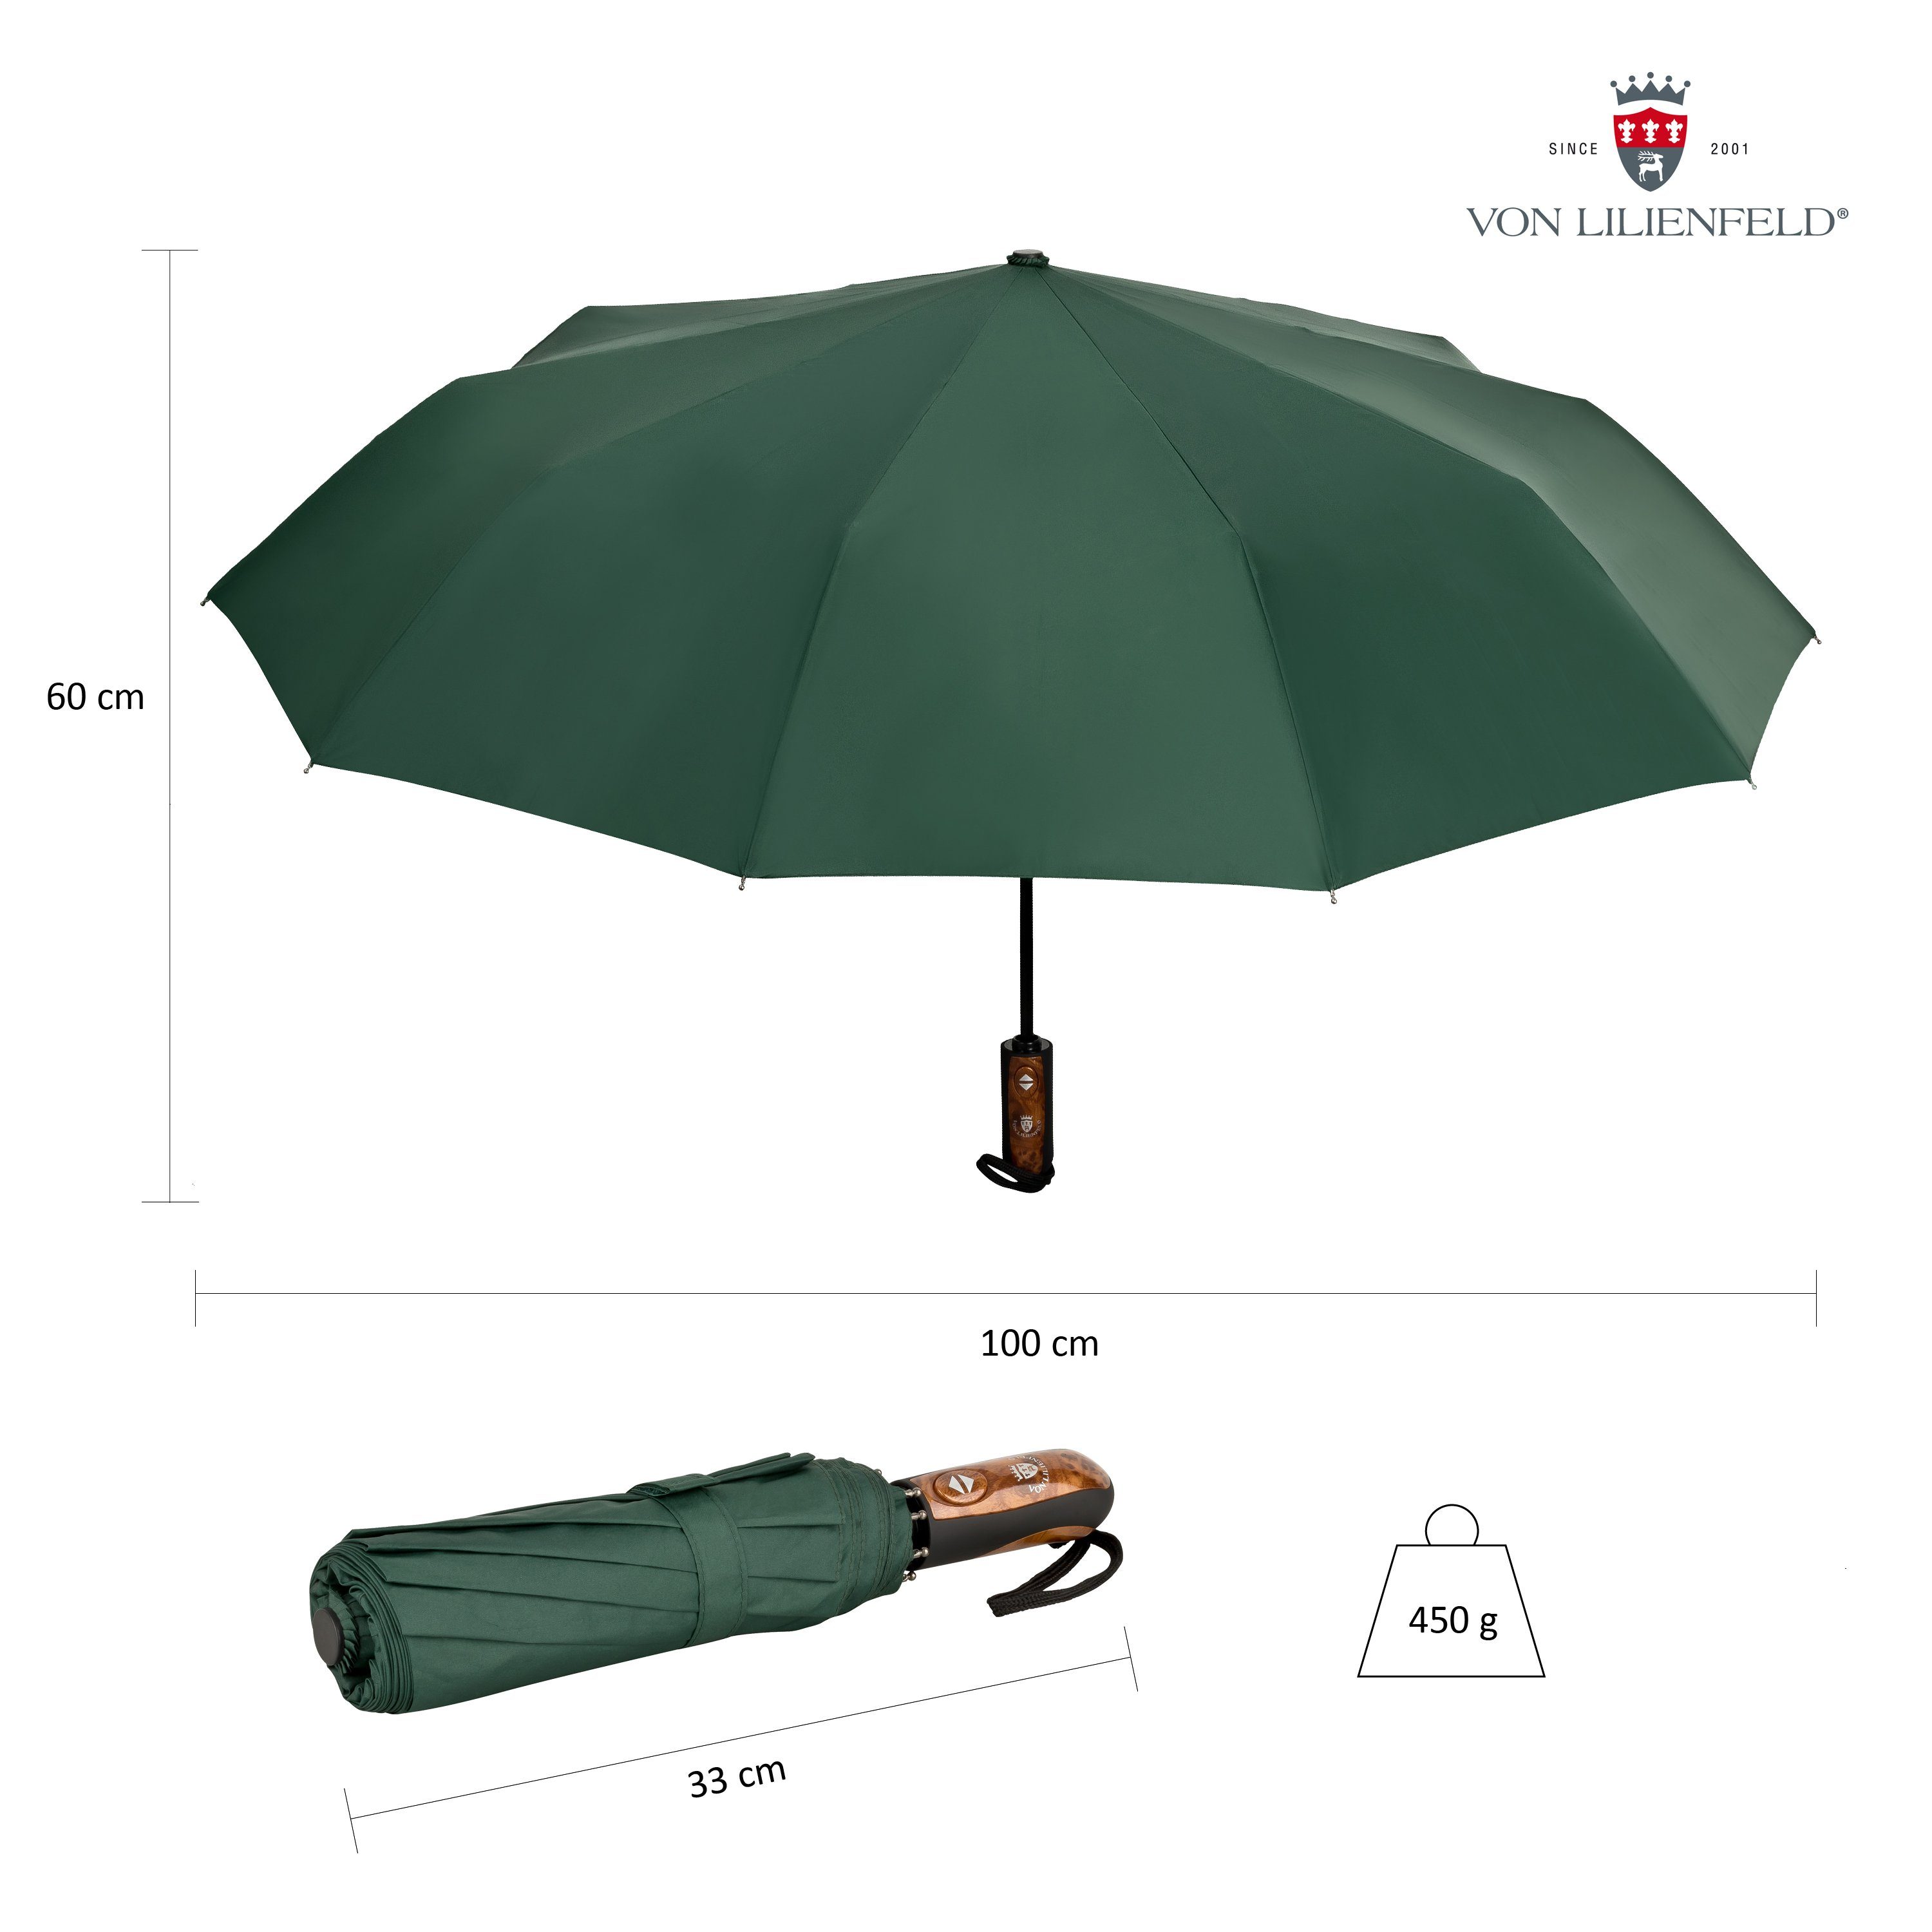 Taschenregenschirm schnelltrocknend Schirm mit Auf-Zu-Automatik Reise-Etu extrem Lilienfeld Teflonbeschichtung, wasserabweisend, Clark von